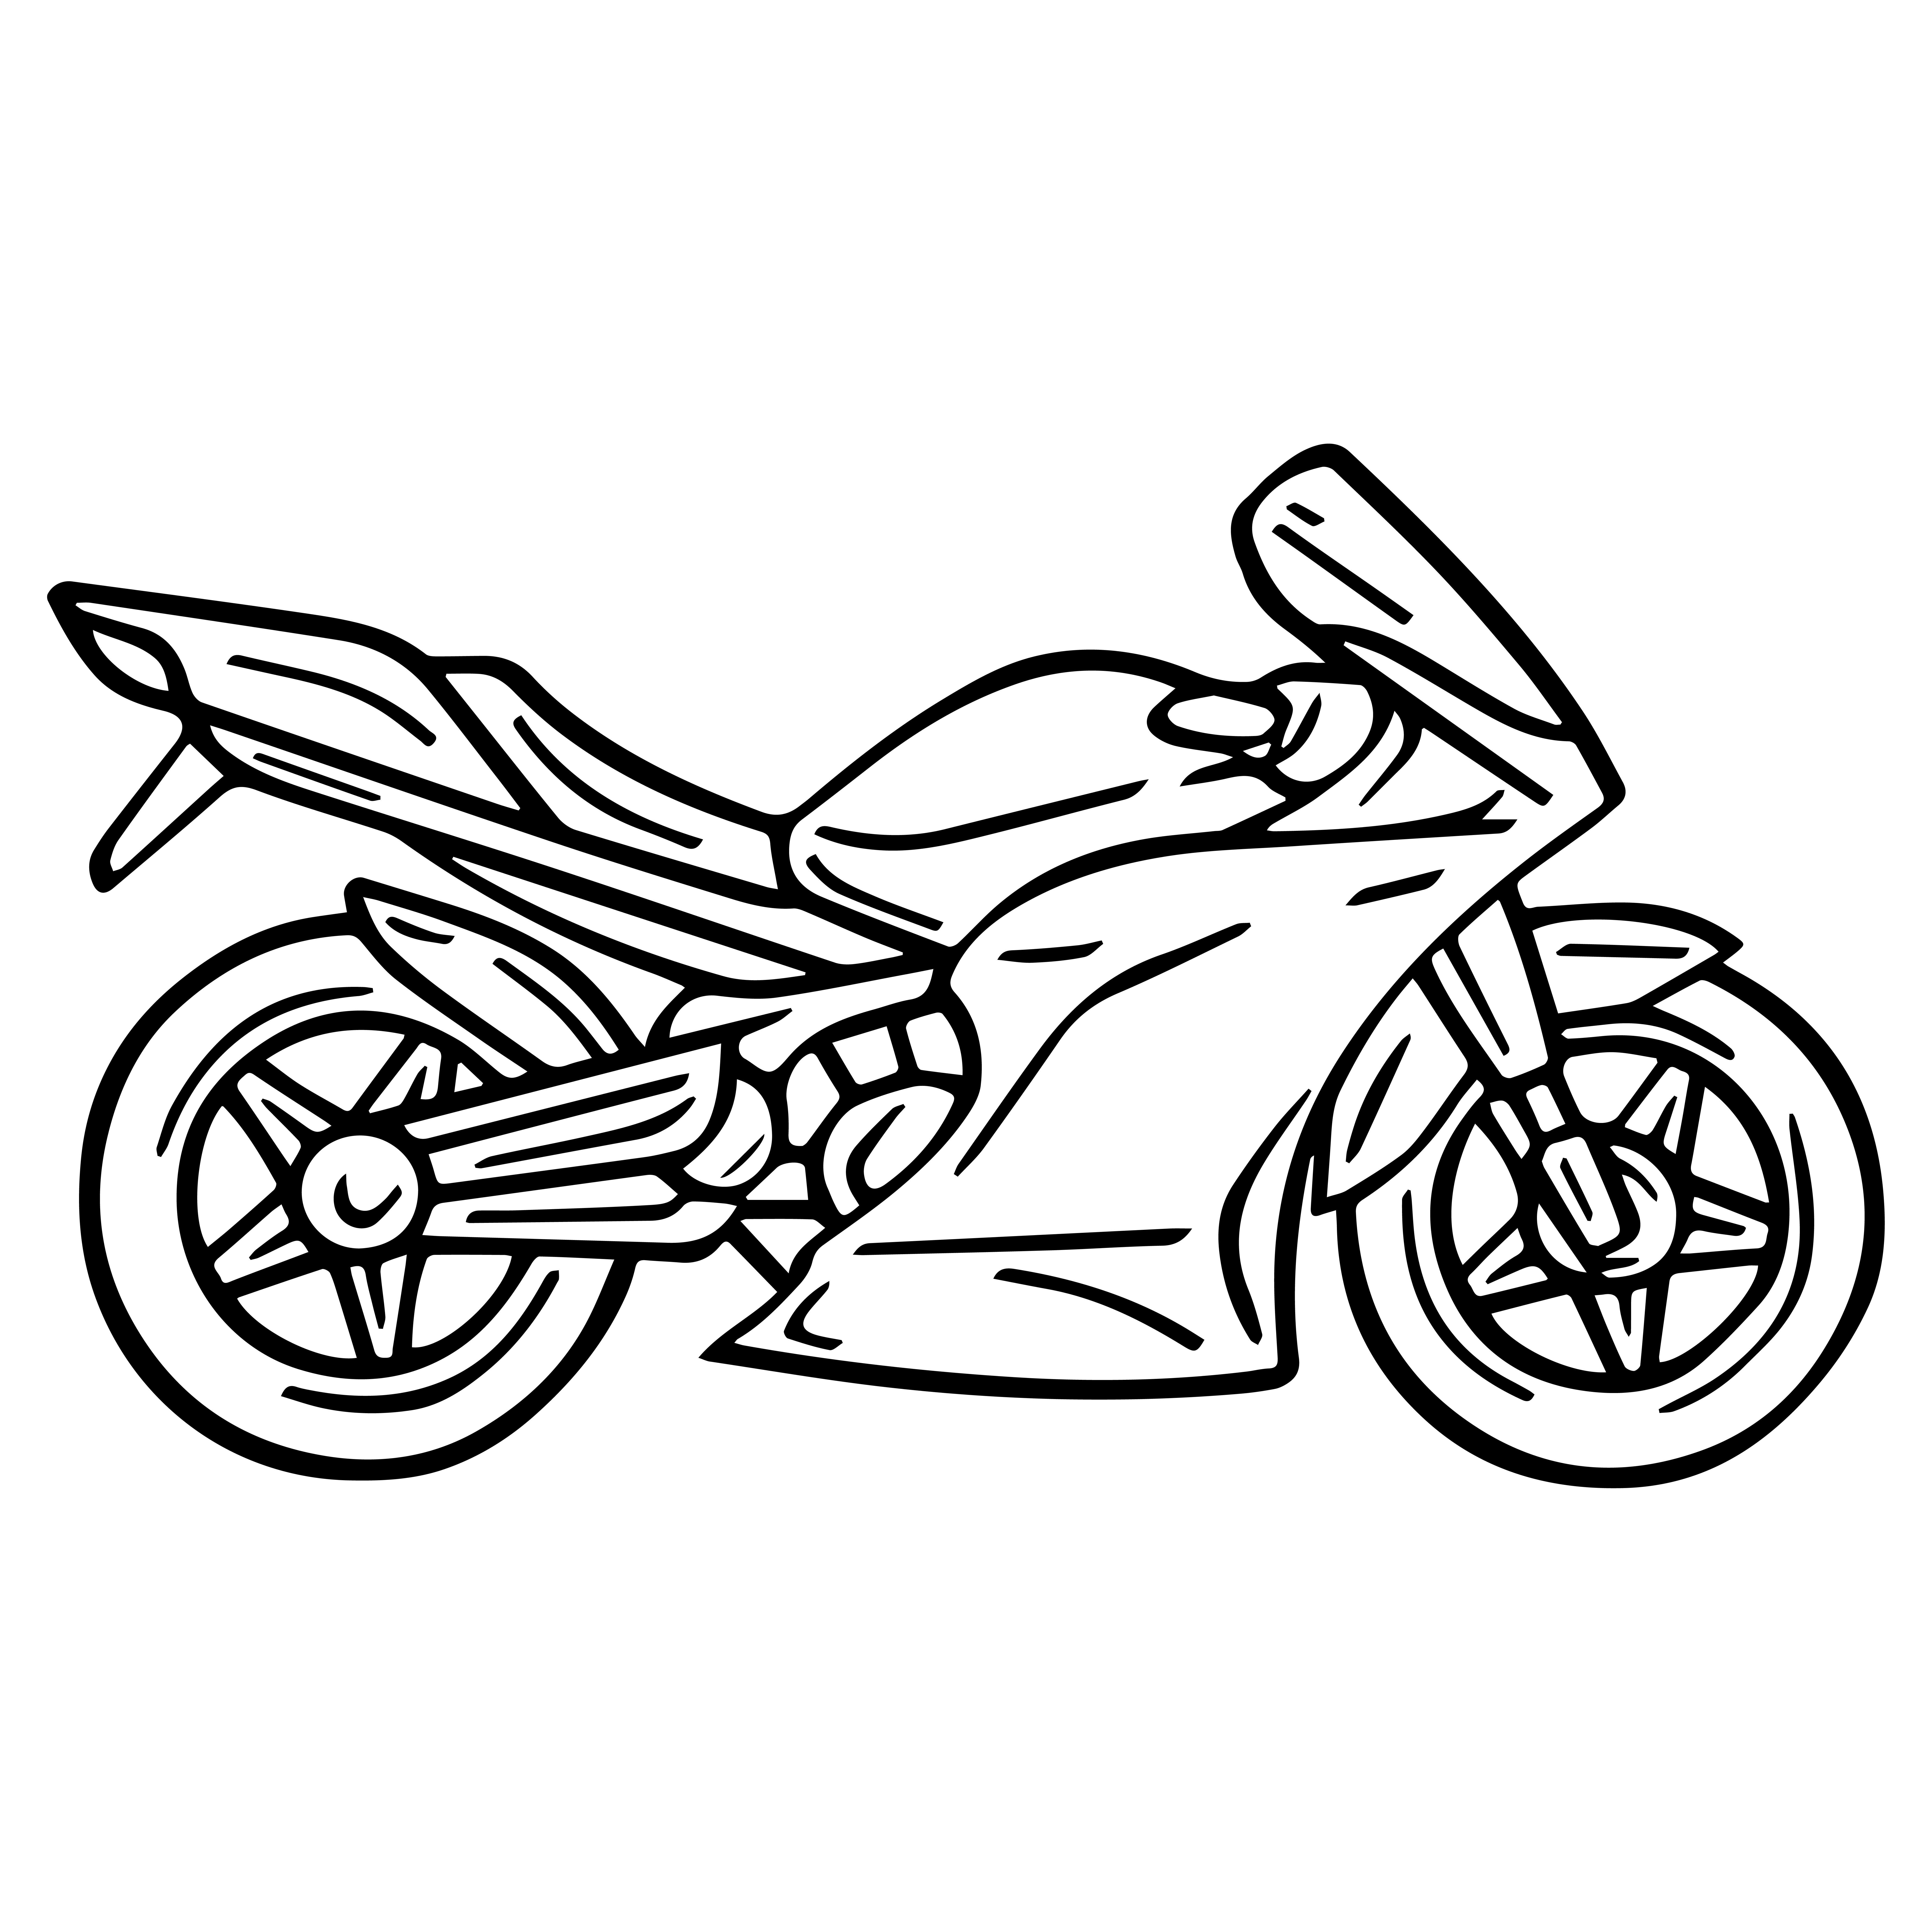 Раскраска мотоцикл «Океан свободы» формата А4 в высоком качестве